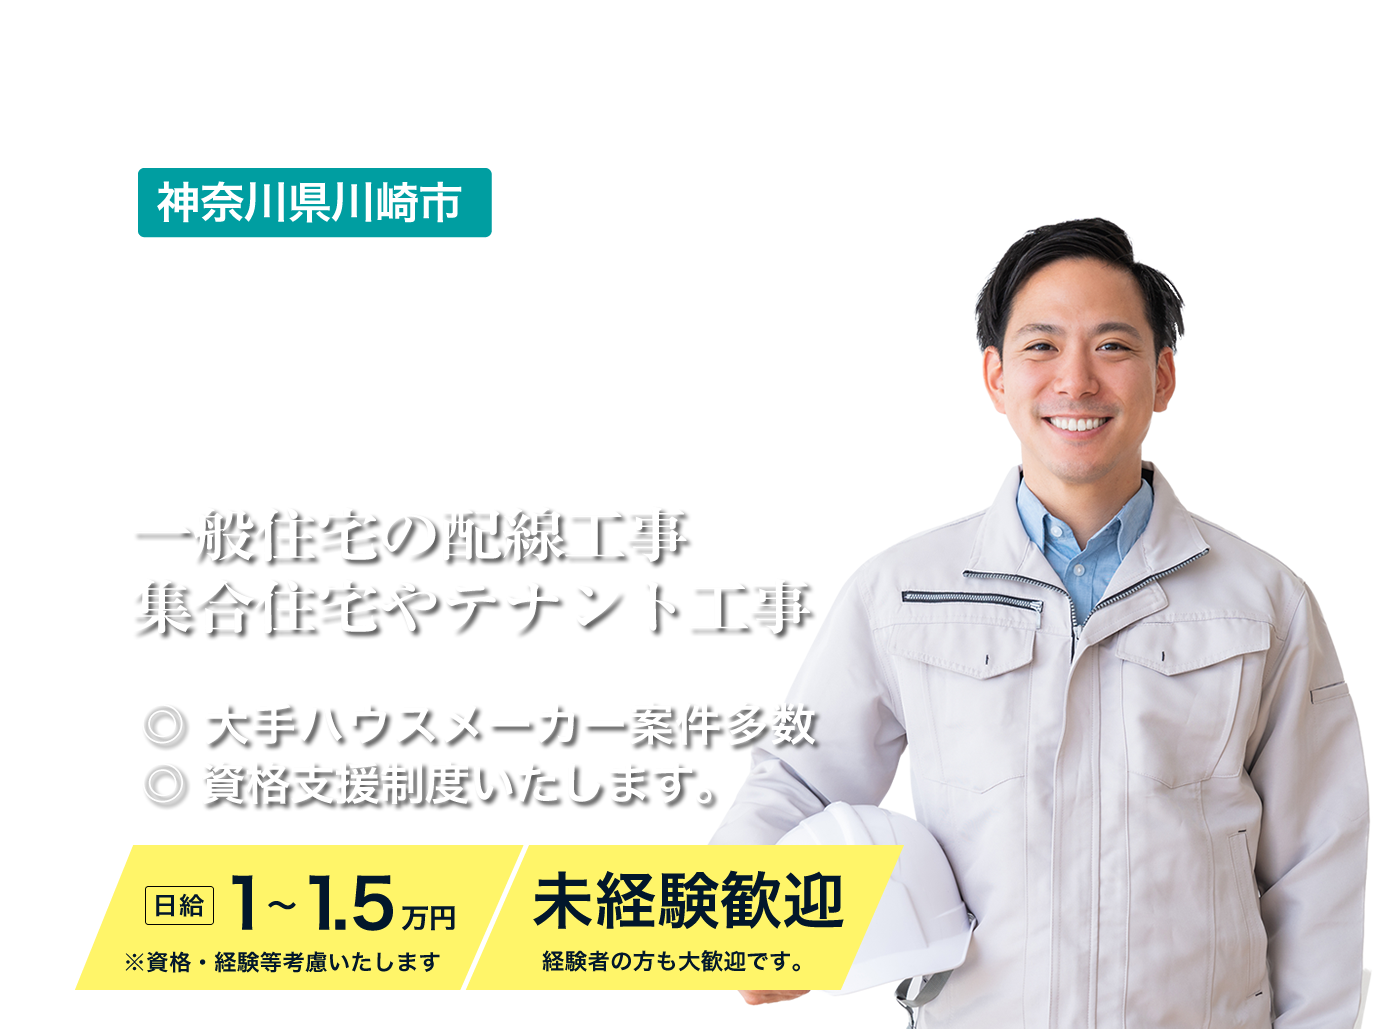 神奈川で電気工事士の仕事ならコムカイ電気株式会社